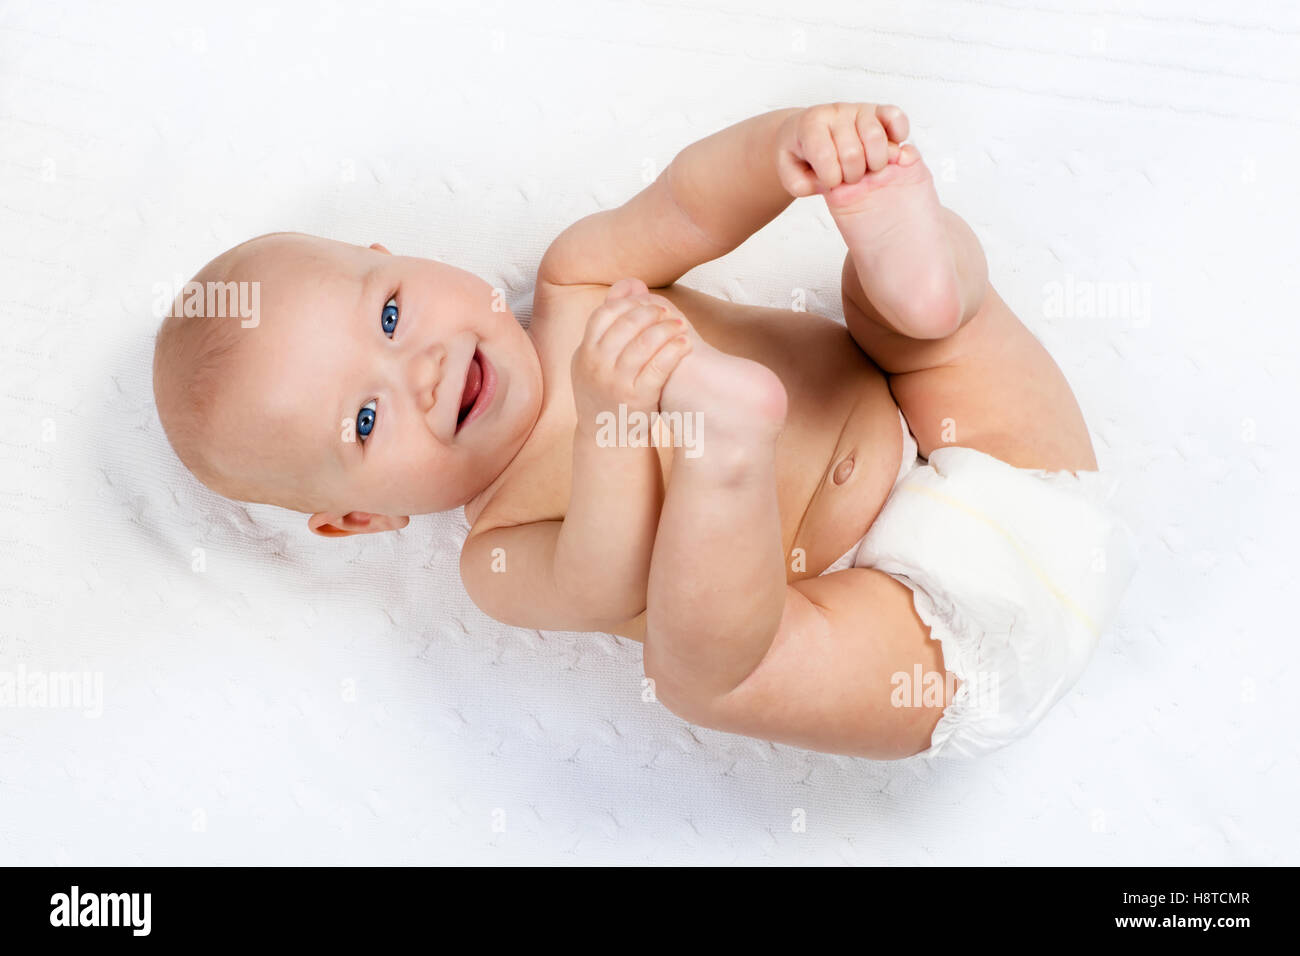 Lustige kleine Baby tragen eine Windel auf einer weißen gestrickte Decke in  einem sonnigen Kindergarten spielen. Kind nach dem Baden oder Duschen  Stockfotografie - Alamy